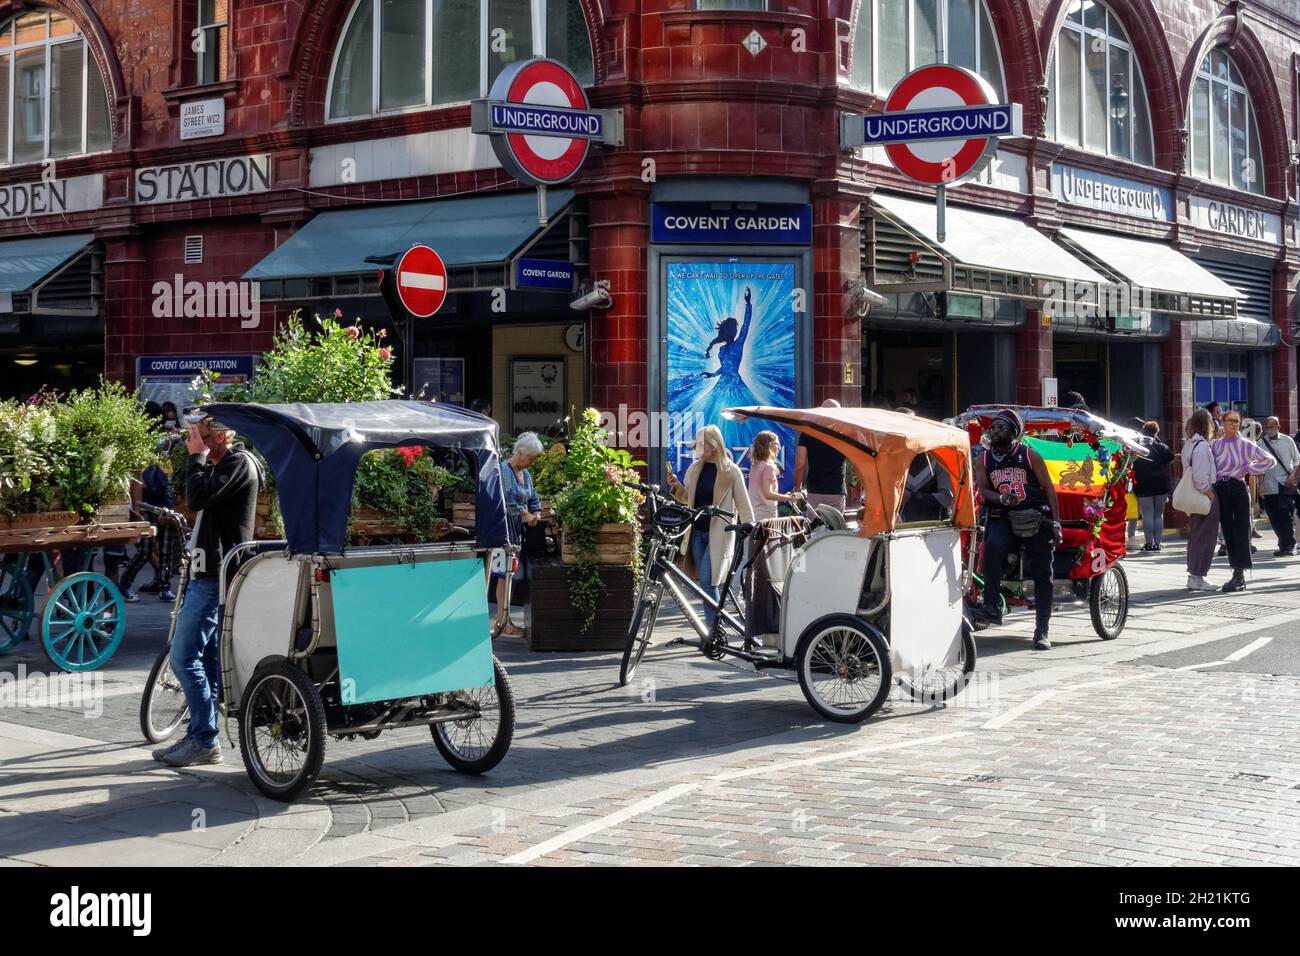 Les chauffeurs de pousse-pousse ou de pousse-pousse attendent les touristes à Covent Garden à Londres, Angleterre Royaume-Uni Royaume-Uni Banque D'Images